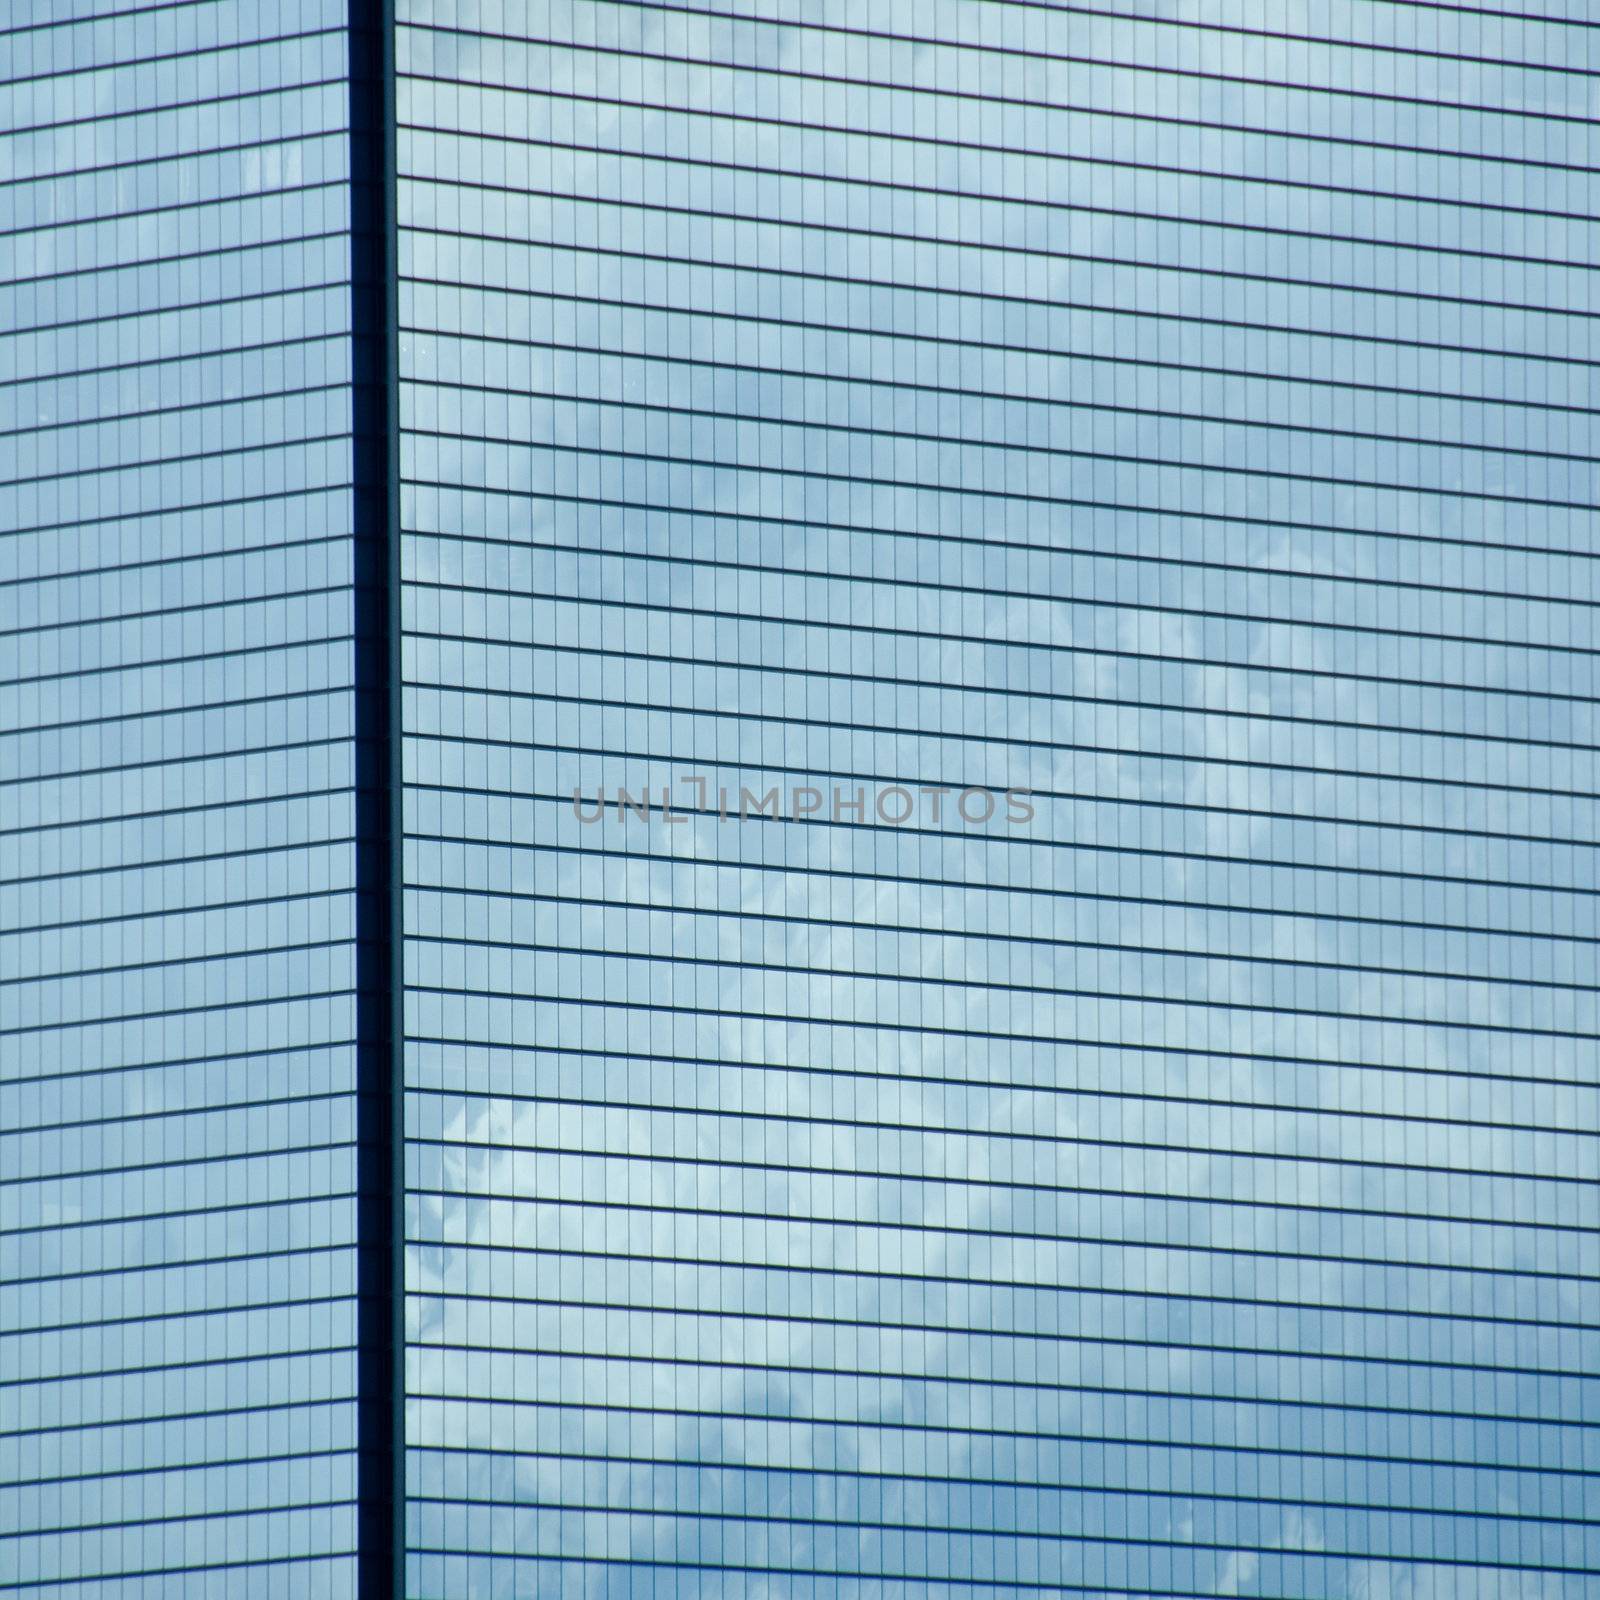 Skyscraper background pattern by Arrxxx